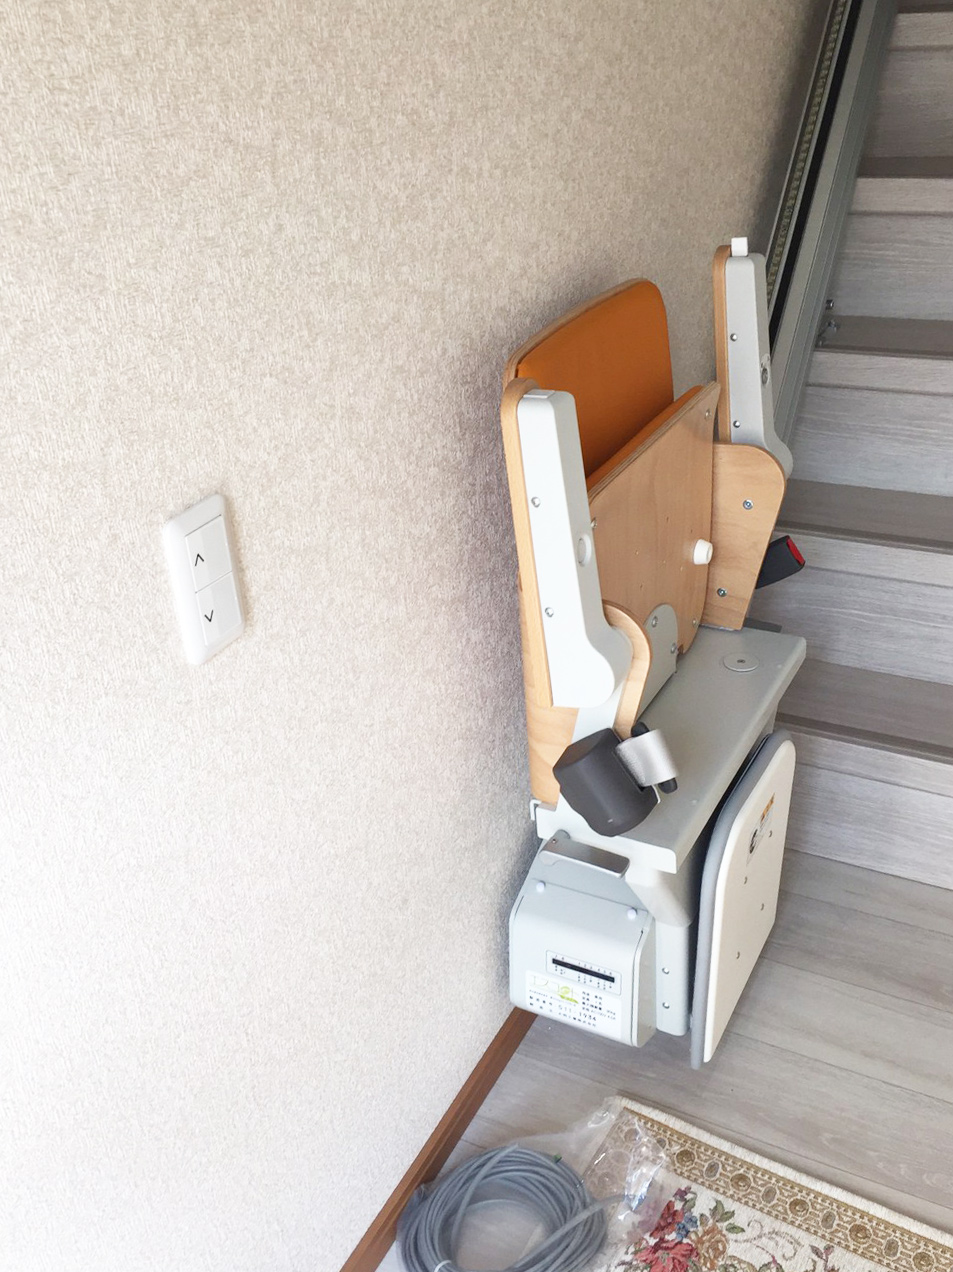 いすを折りたためば、壁から25cmとコンパクトになります。